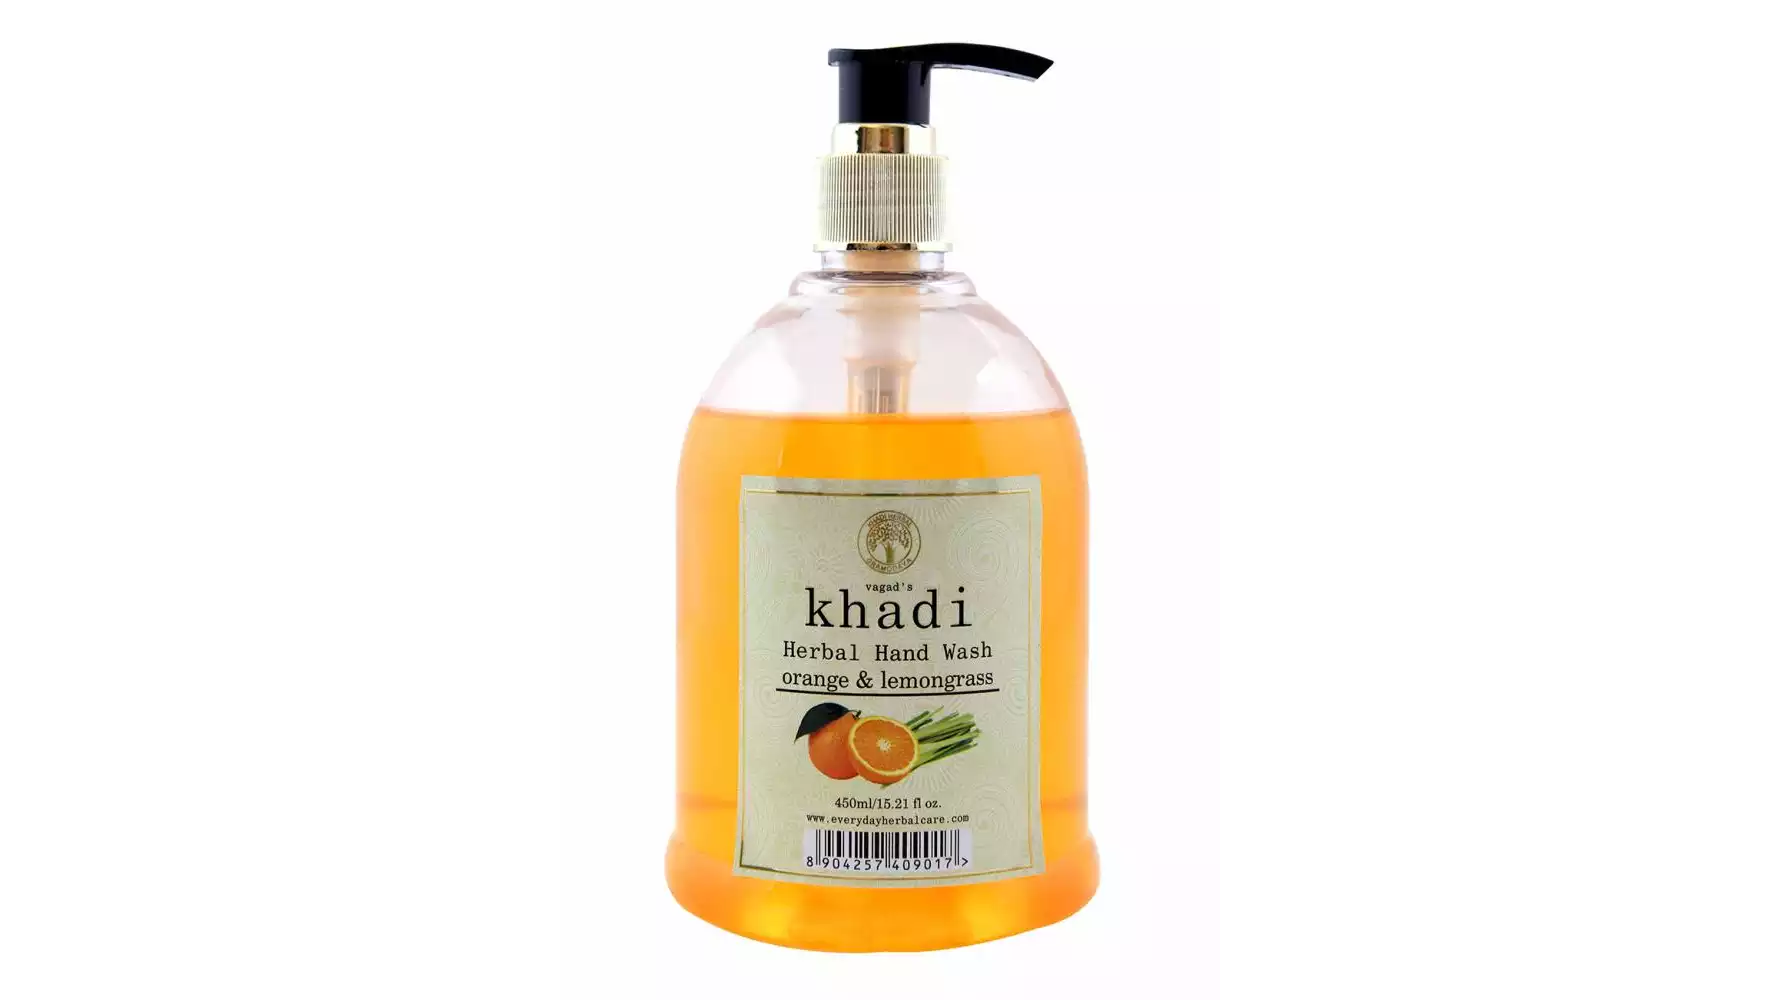 Vagads Khadi Orange & Lemongrass (450ml)